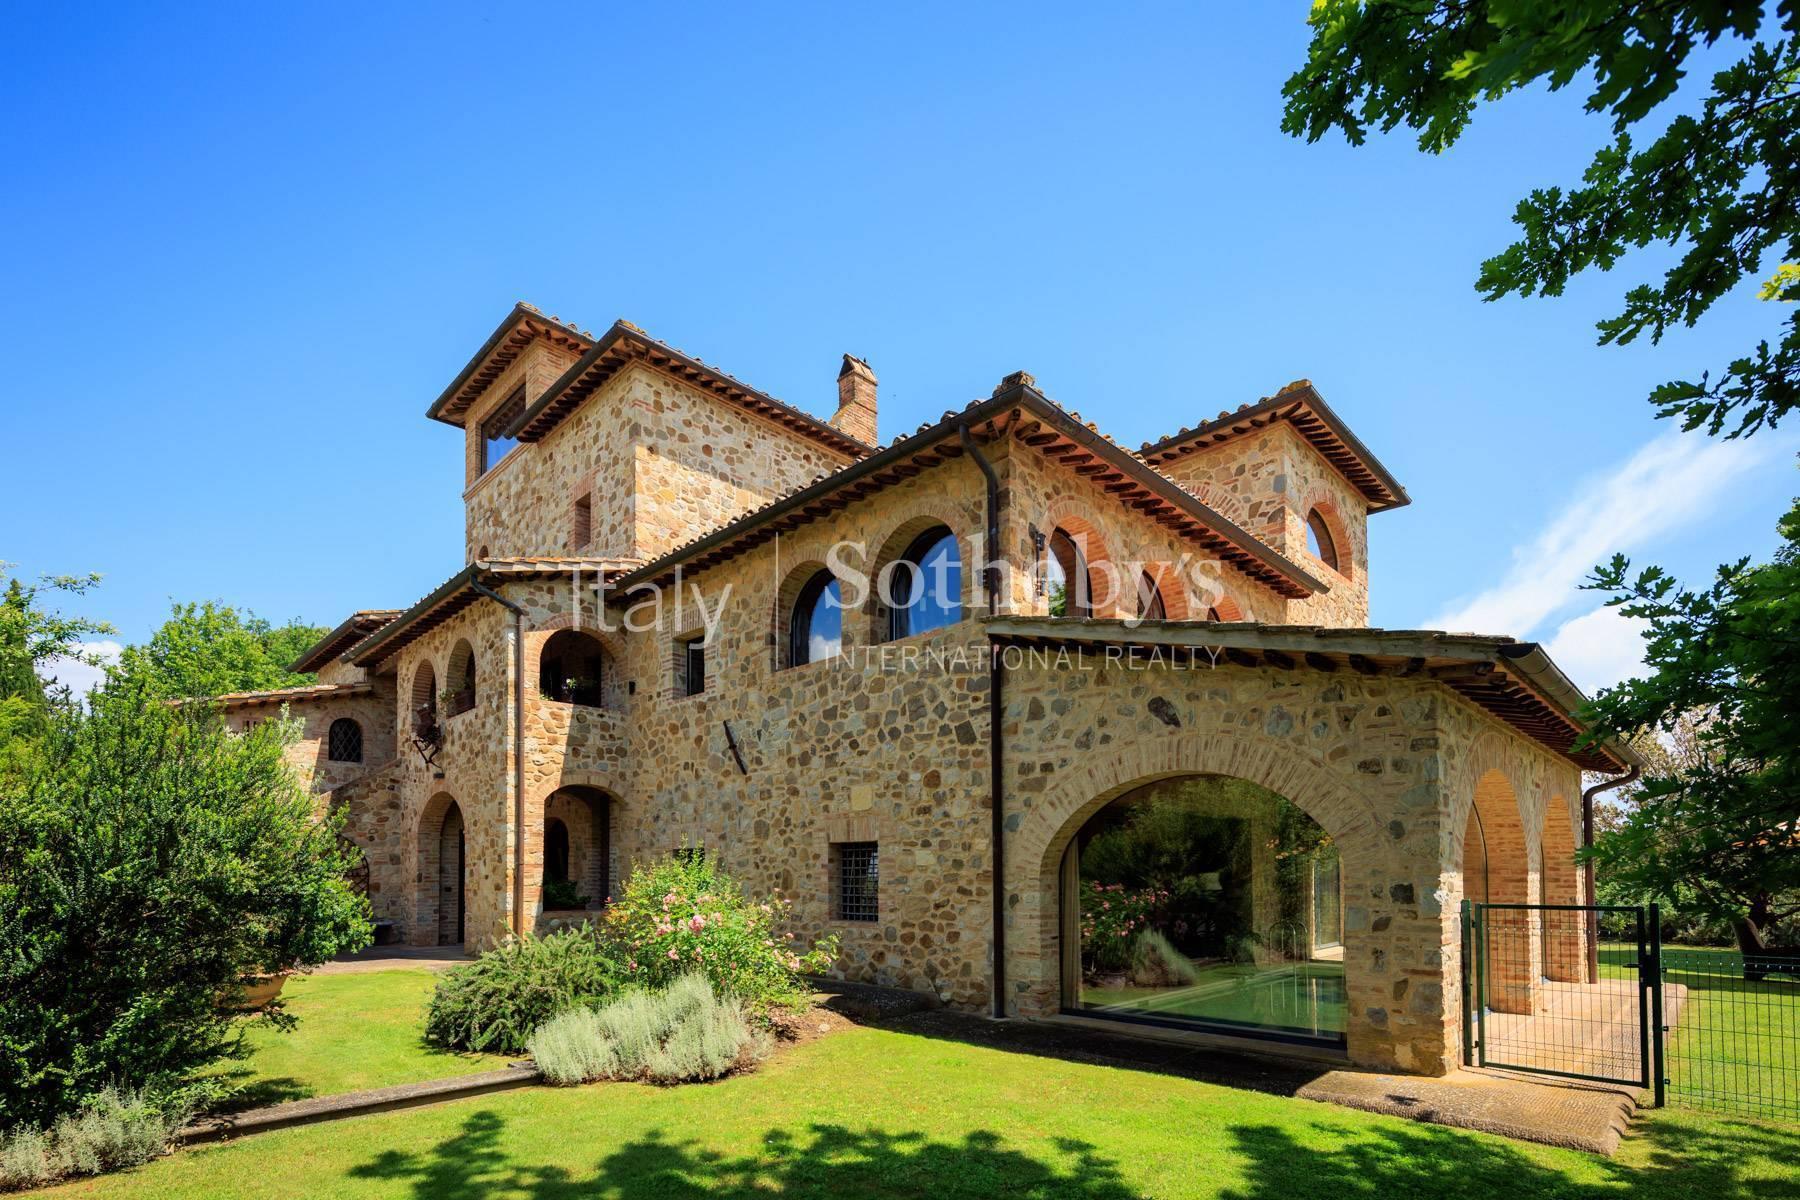 Exceptionnelle villa avec piscine interne et externe près de Siena - 5